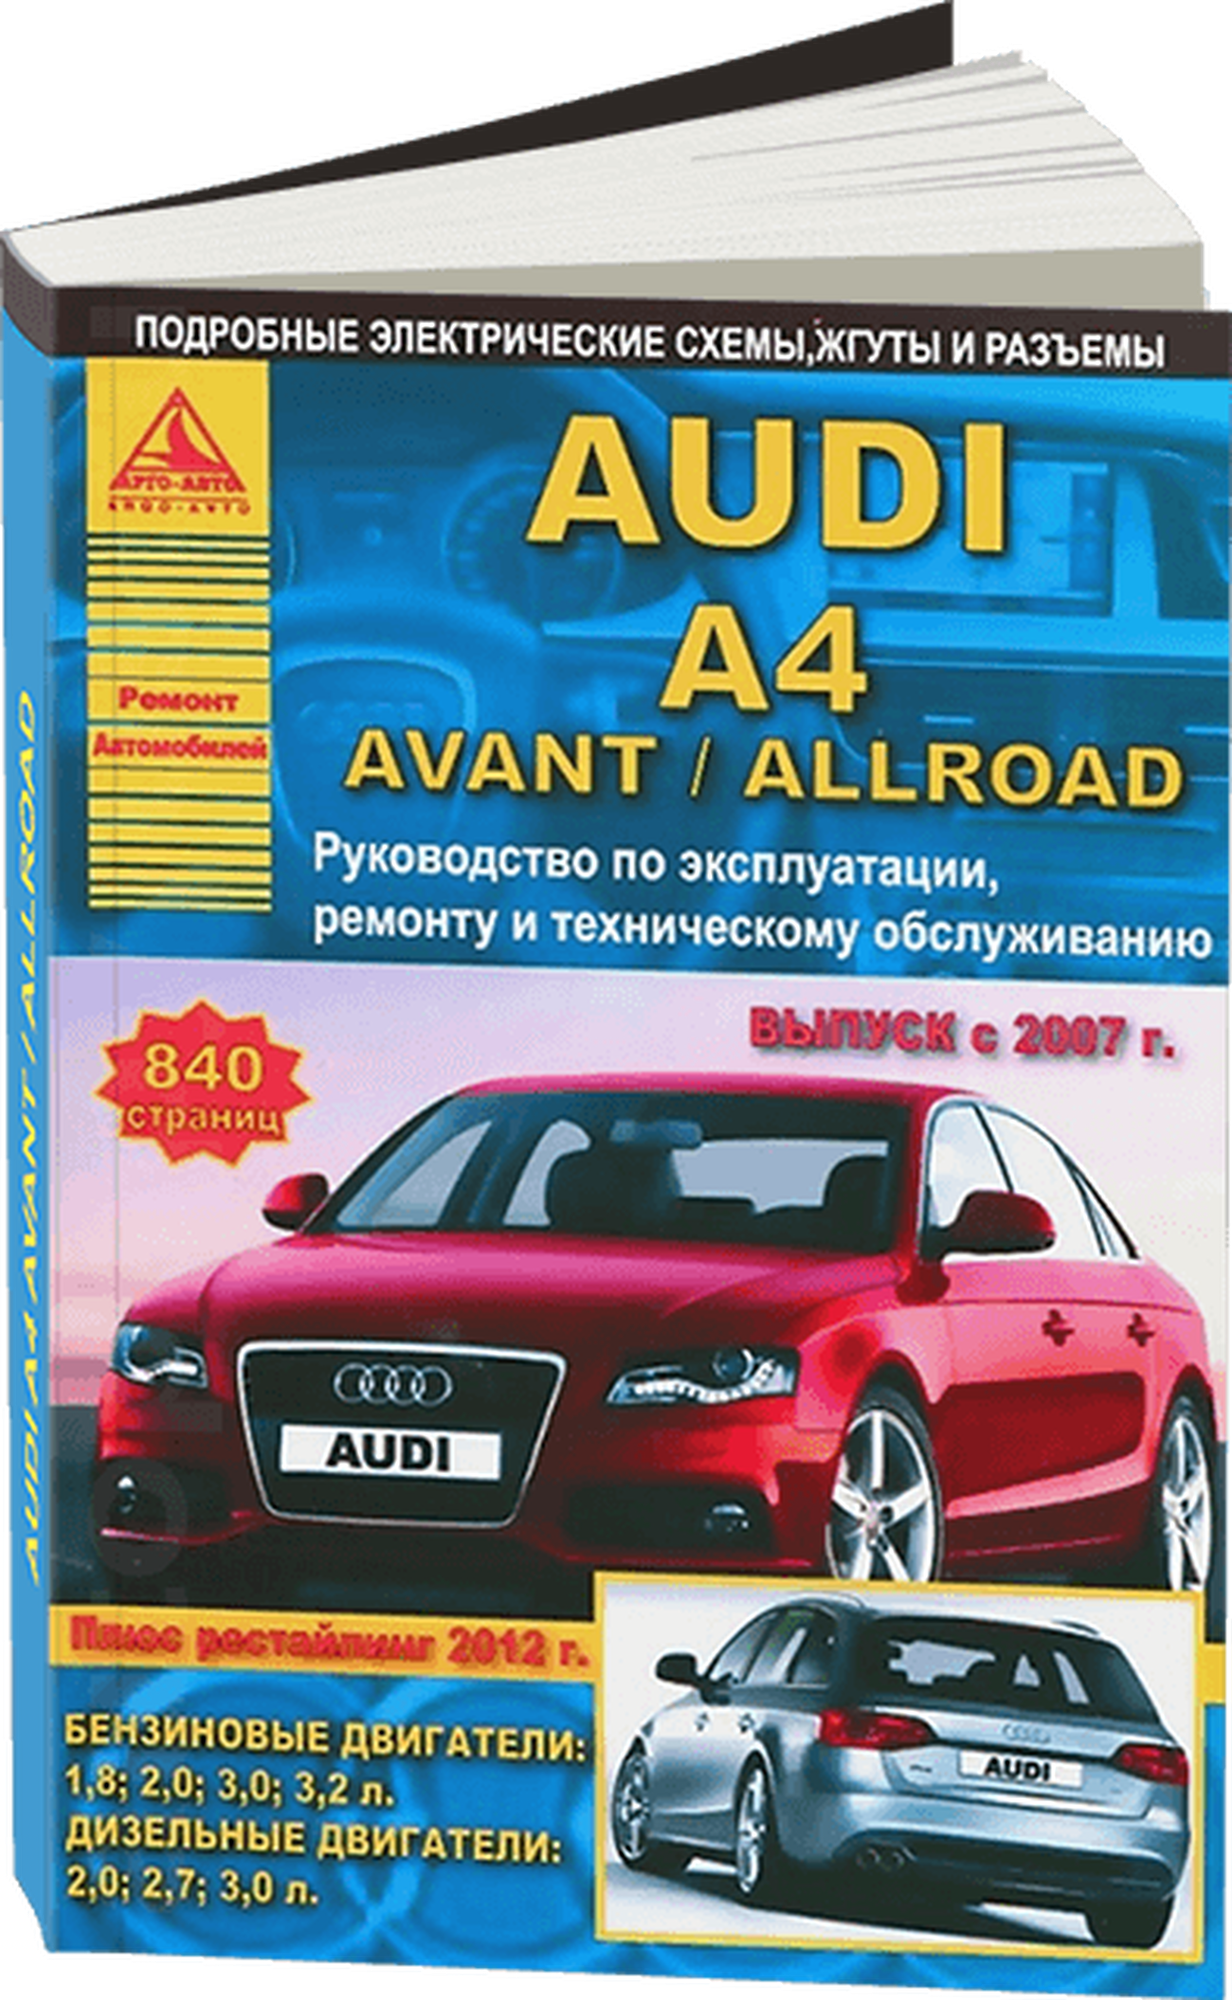 Автокнига: руководство / инструкция по обслуживанию и ремонту AUDI A4 / авант / ALLROAD бензин / дизель с 2007 + рестайлинг с 2012 года выпуска, 978-5-8245-0162-9, издательство Арго-Авто